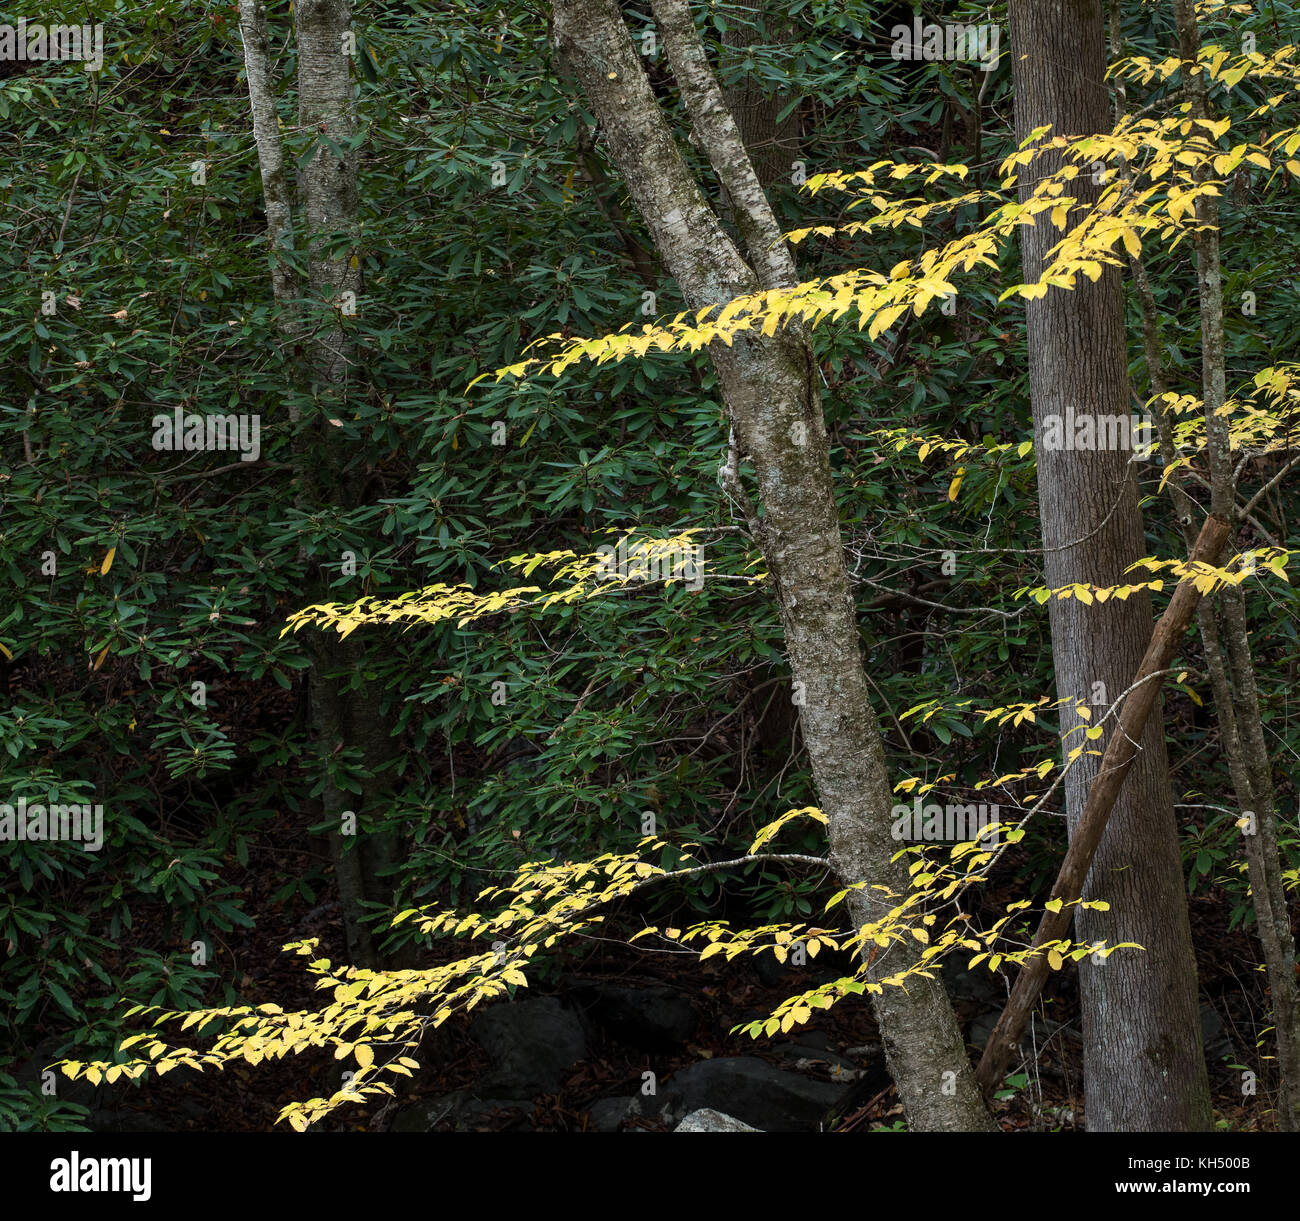 Le bouleau jaune (Betula alleghaniensis) pousse généralement dans la partie nord-est des États-Unis. son habitat ne s'étendent dans le sud-est des États-Unis à la plus haute altitude dans la région de tennesee, Caroline du Nord, et de la Géorgie. Comme plusieurs espèces de la famille, l'écorce va commencer à révéler un peeling nature quand il mûrit. Banque D'Images